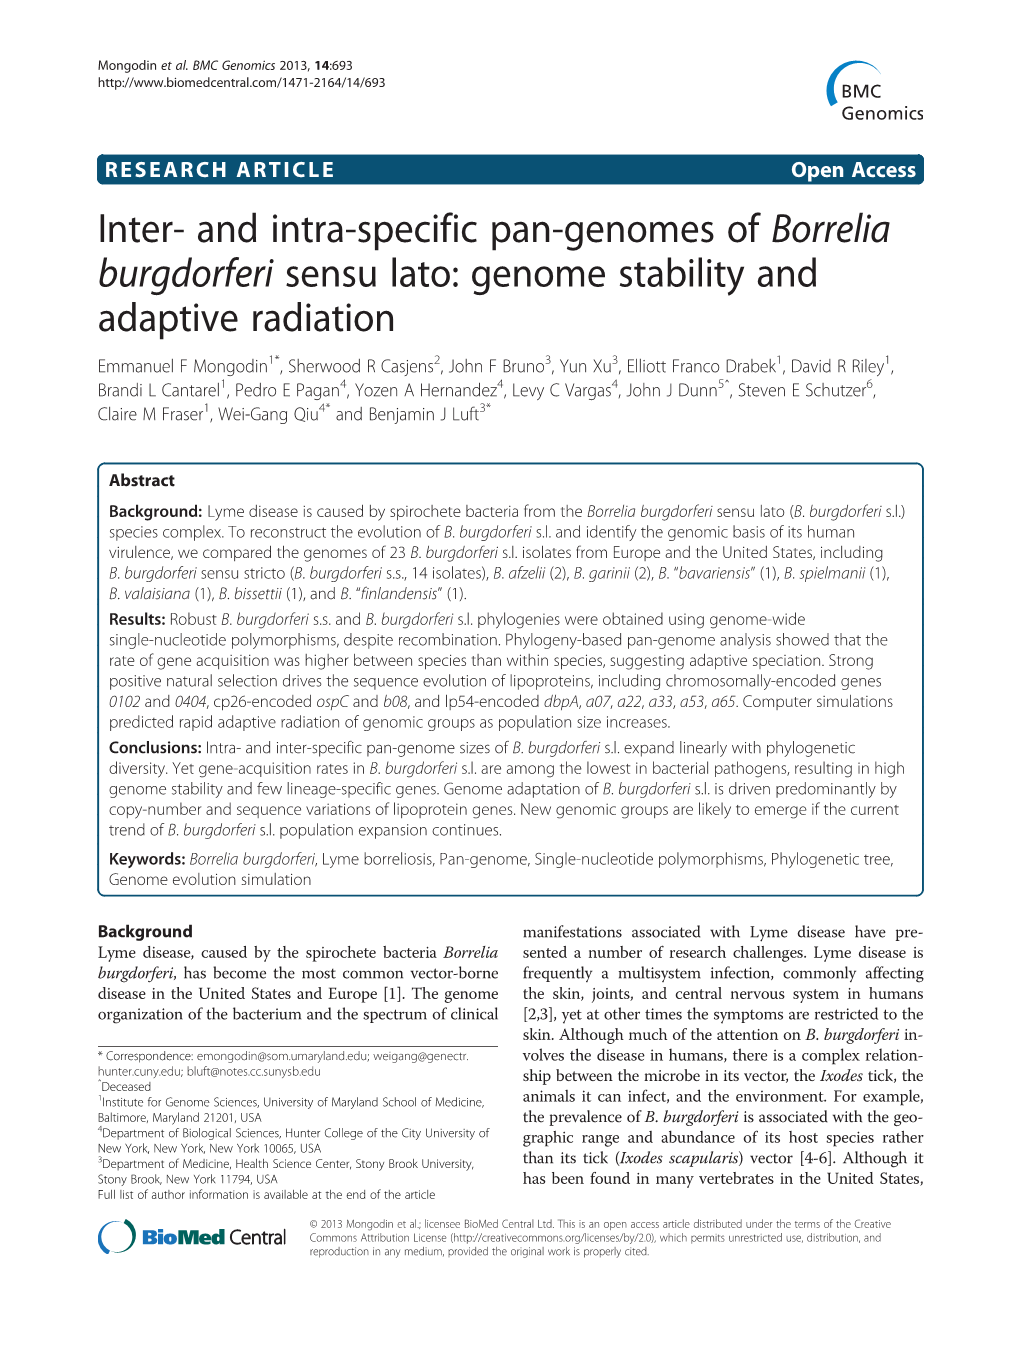 And Intra-Specific Pan-Genomes of Borrelia Burgdorferi